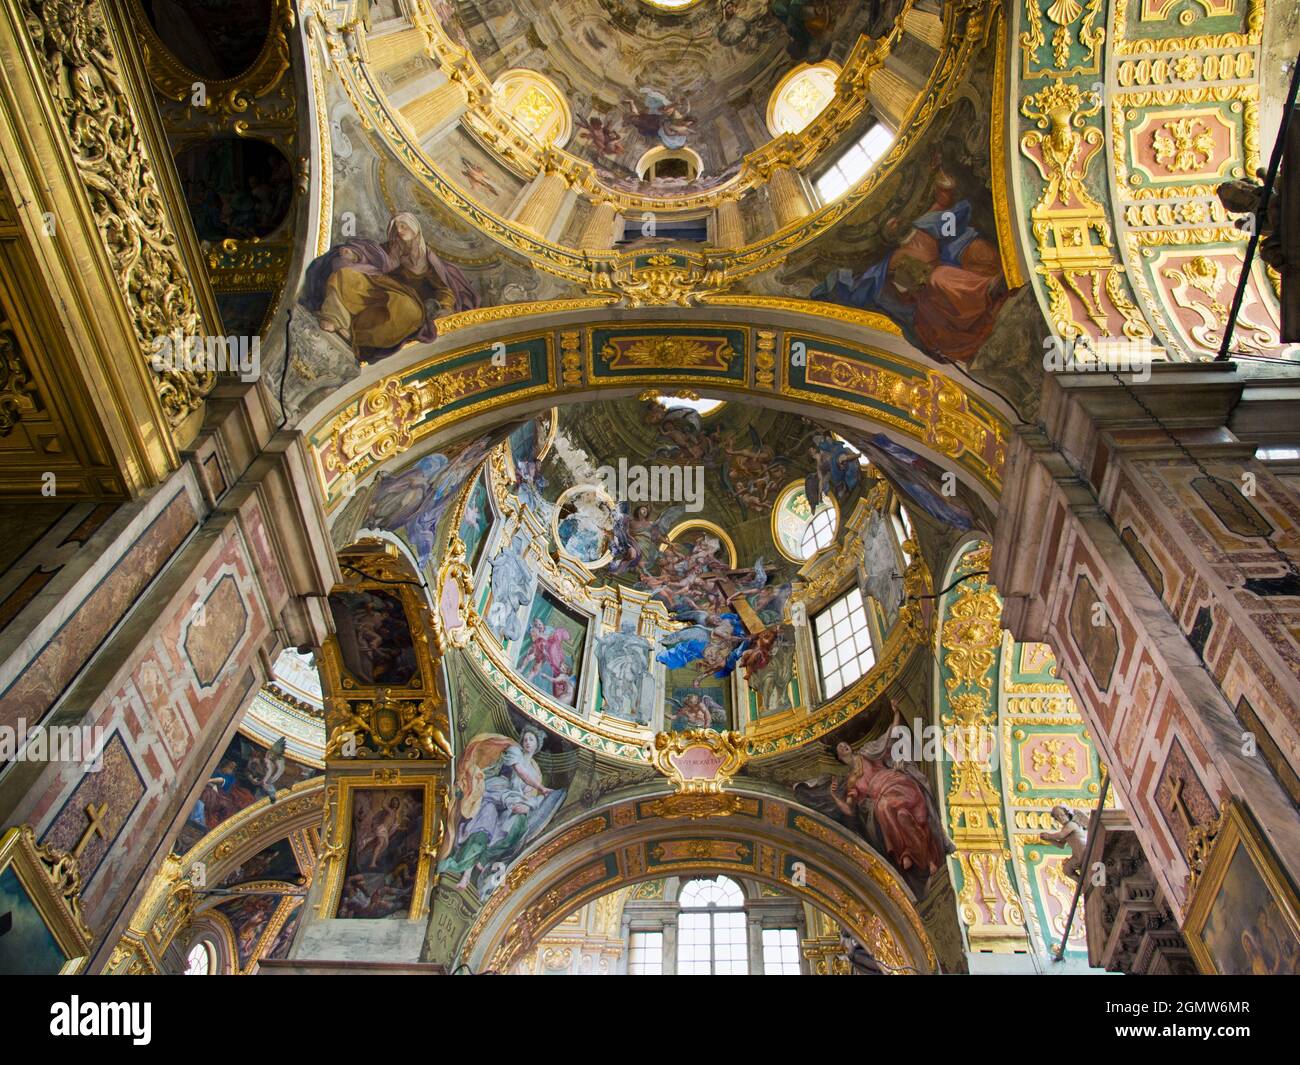 Genua, Italien - 2013. Juni; Diese großzügige, barocke Basilika ist eine katholische Kathedrale in Genua, Norditalien; ihre reich verzierten Dekorationen - hier abgebildet - emplo Stockfoto